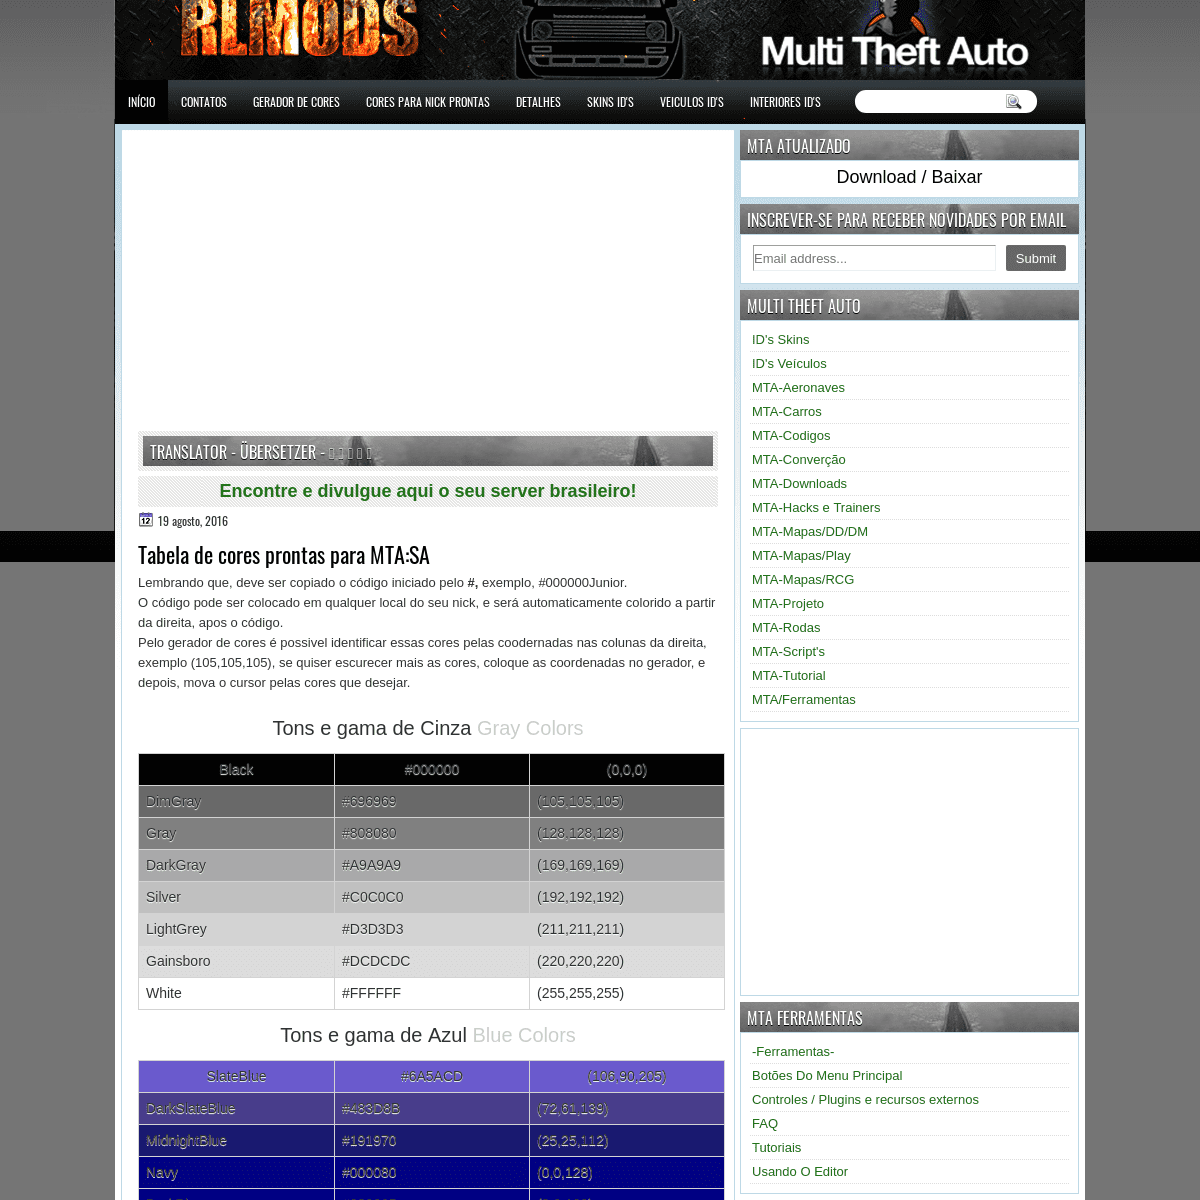 A complete backup of rlmods.blogspot.com